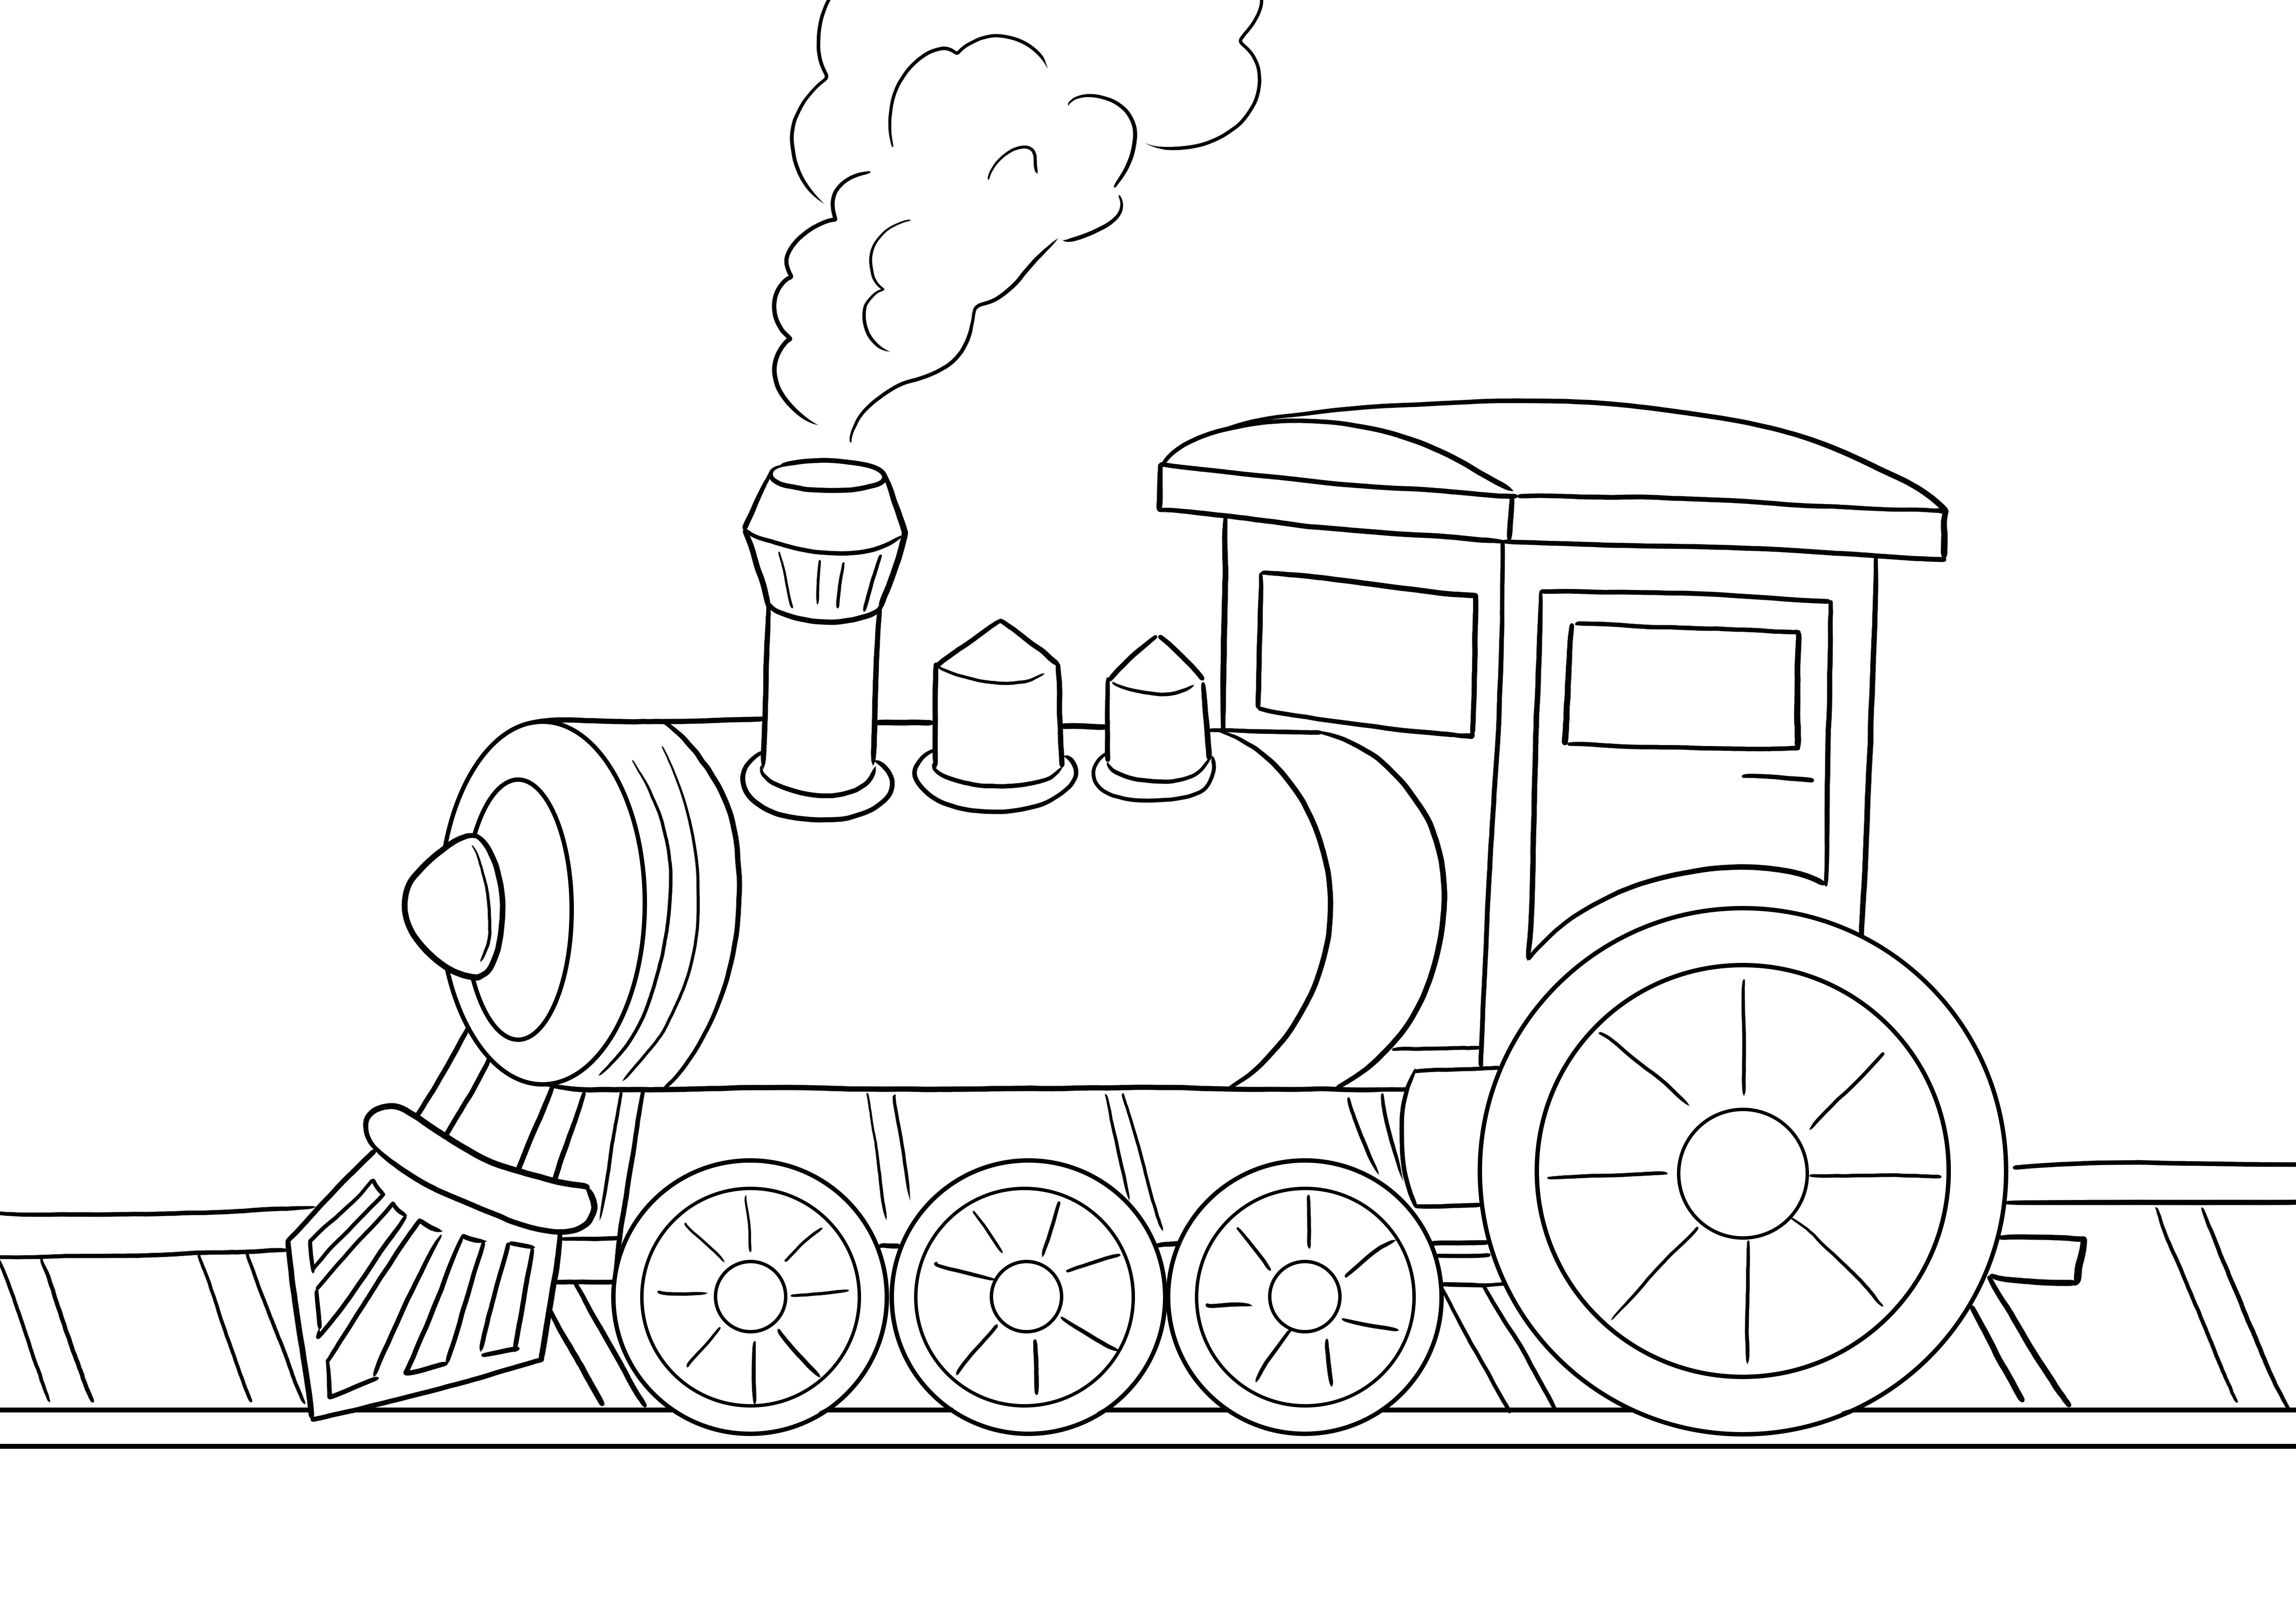 A Steam Locomotive ingyenesen letölthető és könnyen kiszínezhető a szórakoztató tanuláshoz